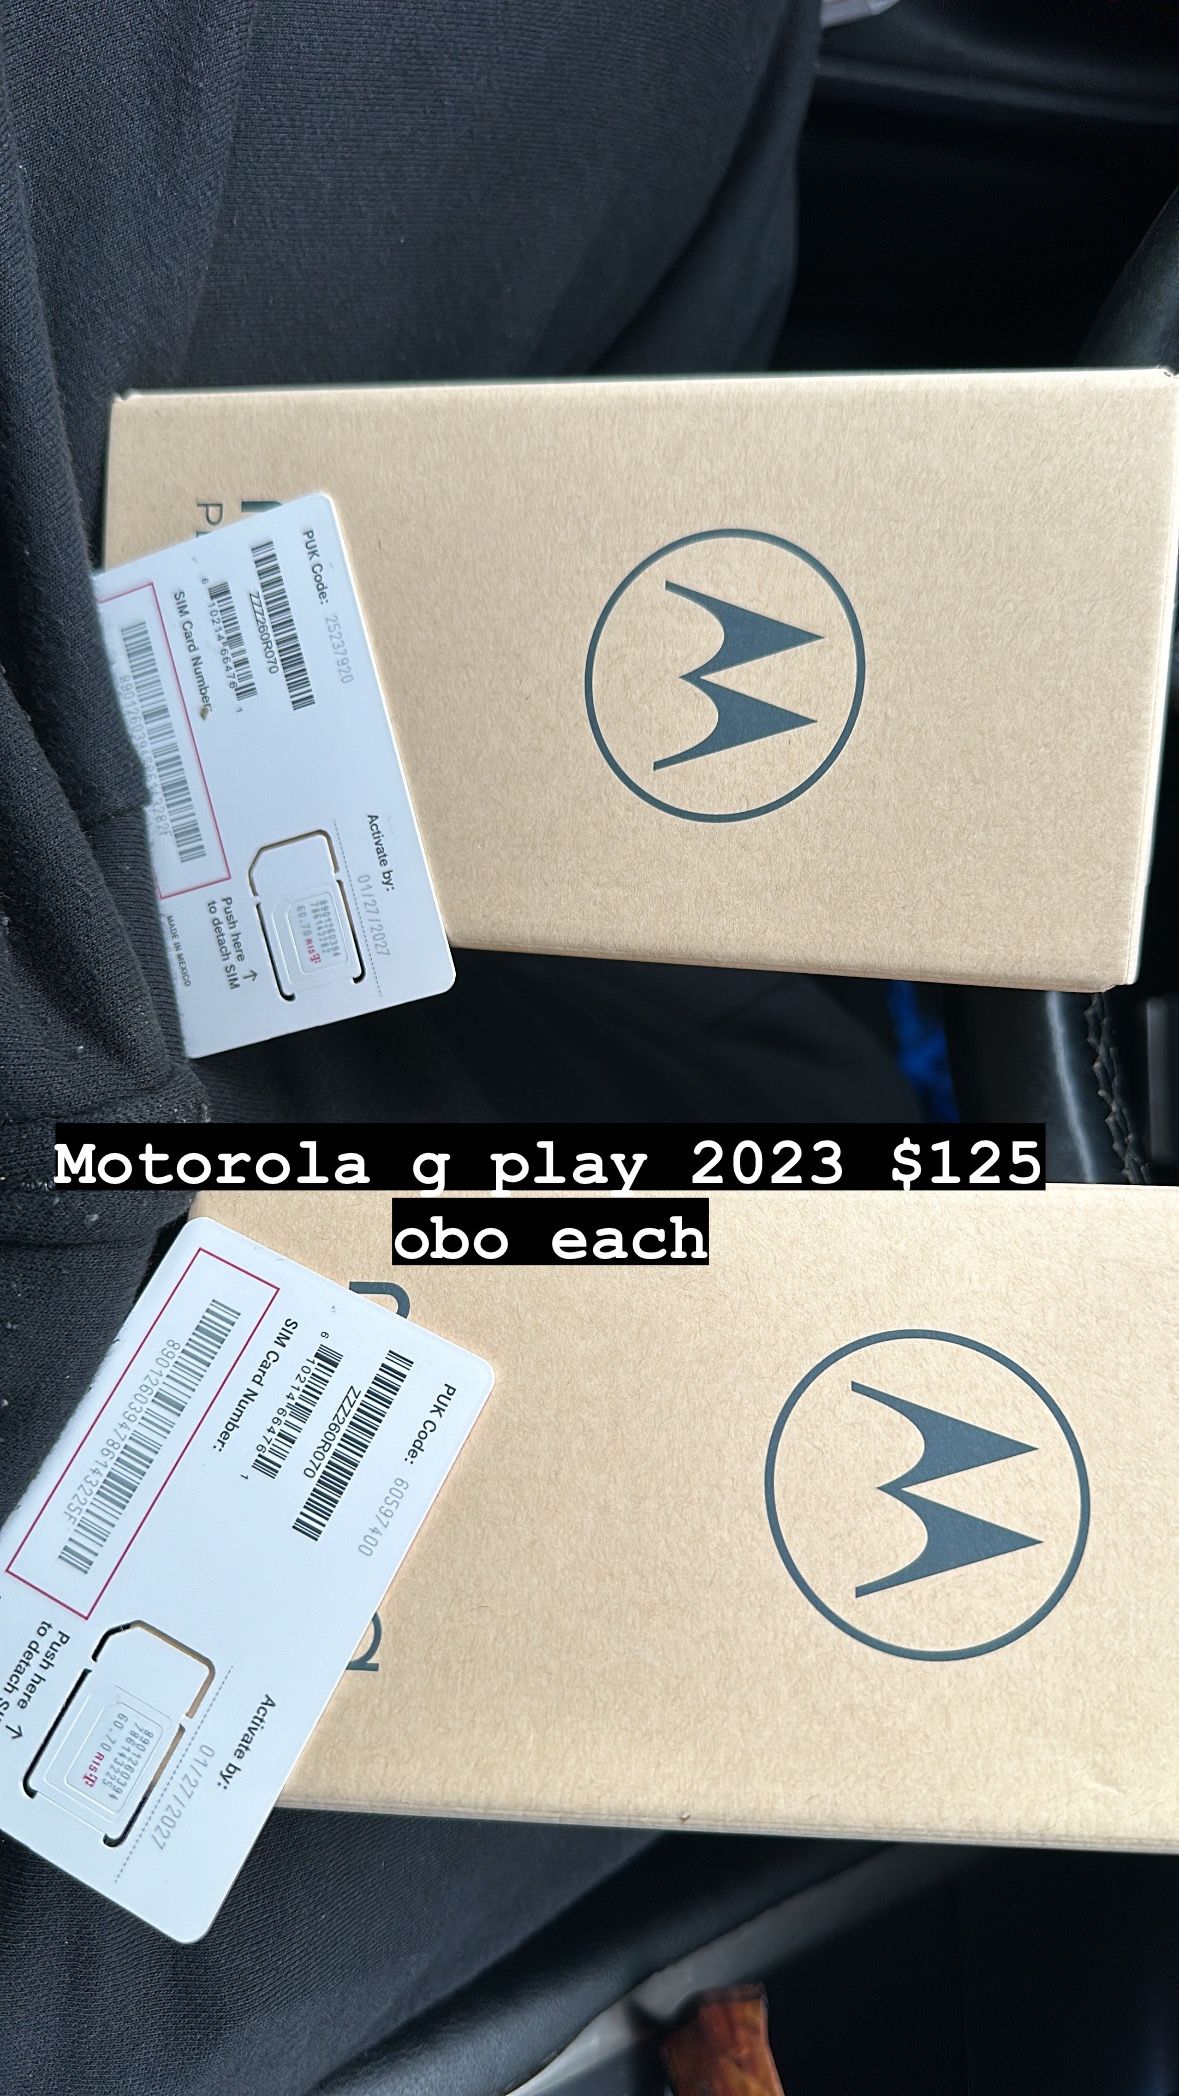 Moto g play (2023) 